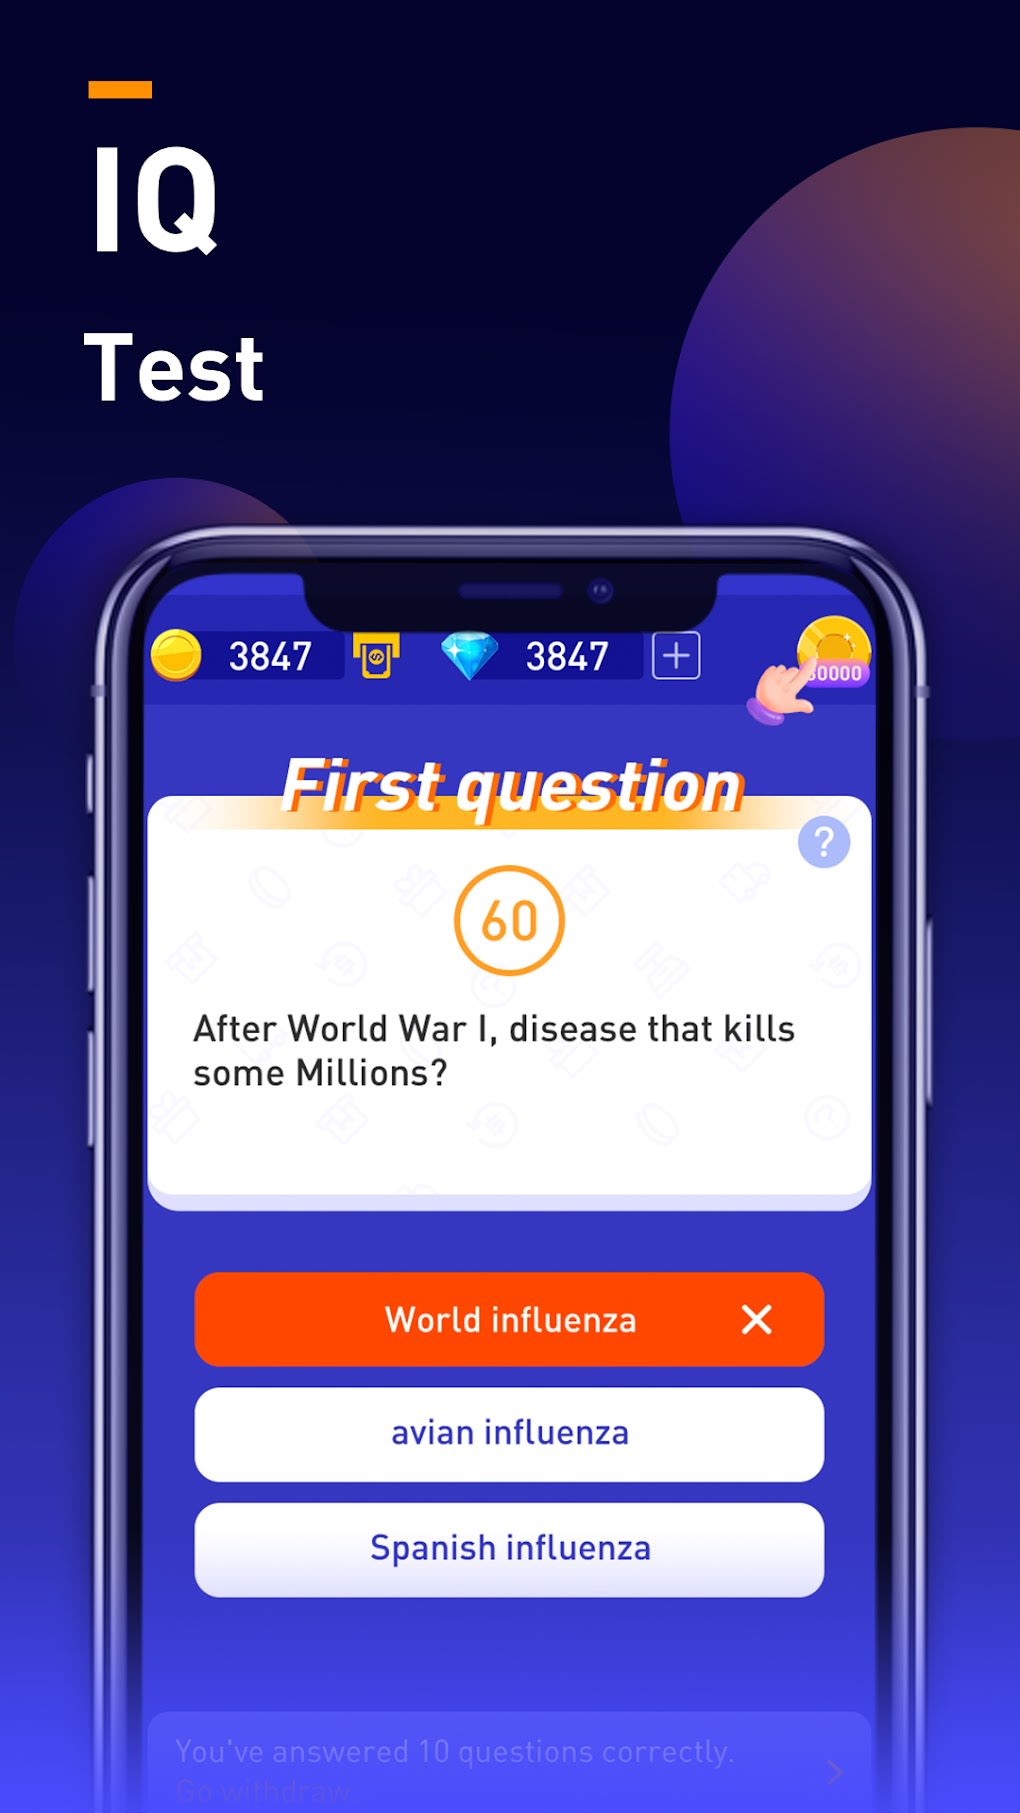 Gênio Quiz 3 APK - Baixar app grátis para Android